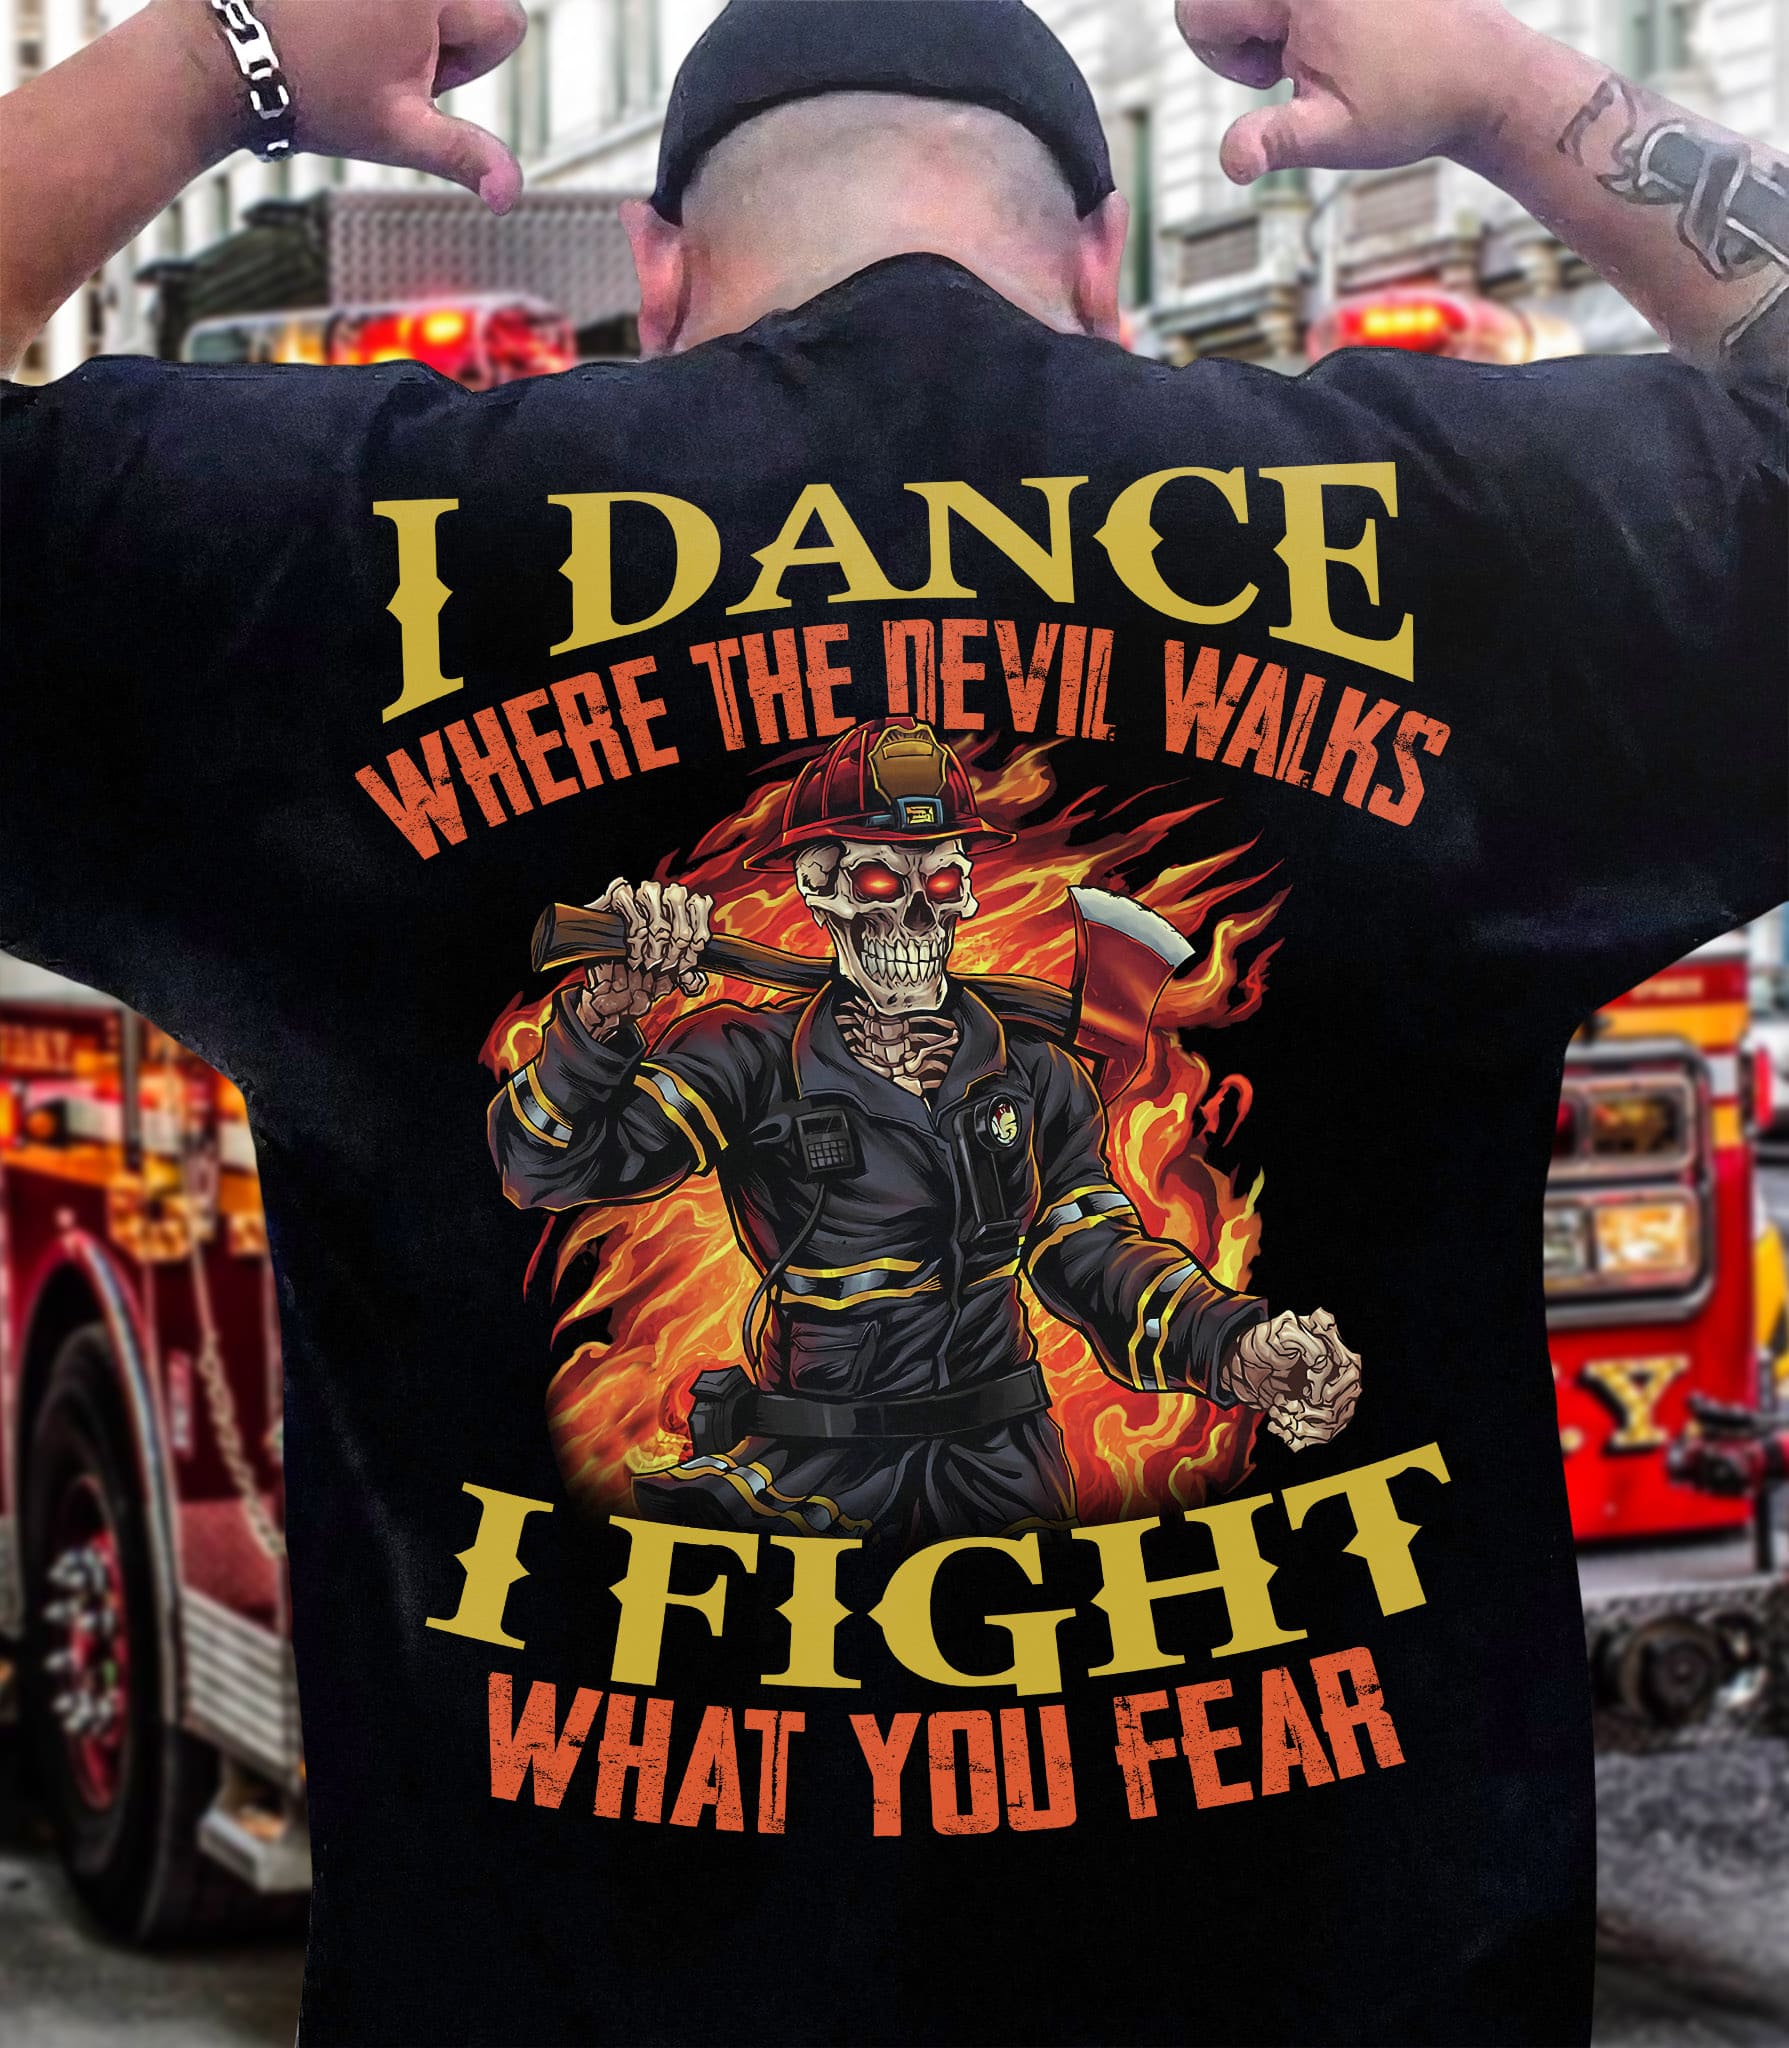 Evil Firefighter Skeleton - I dance where the devil walks i fight what you fear